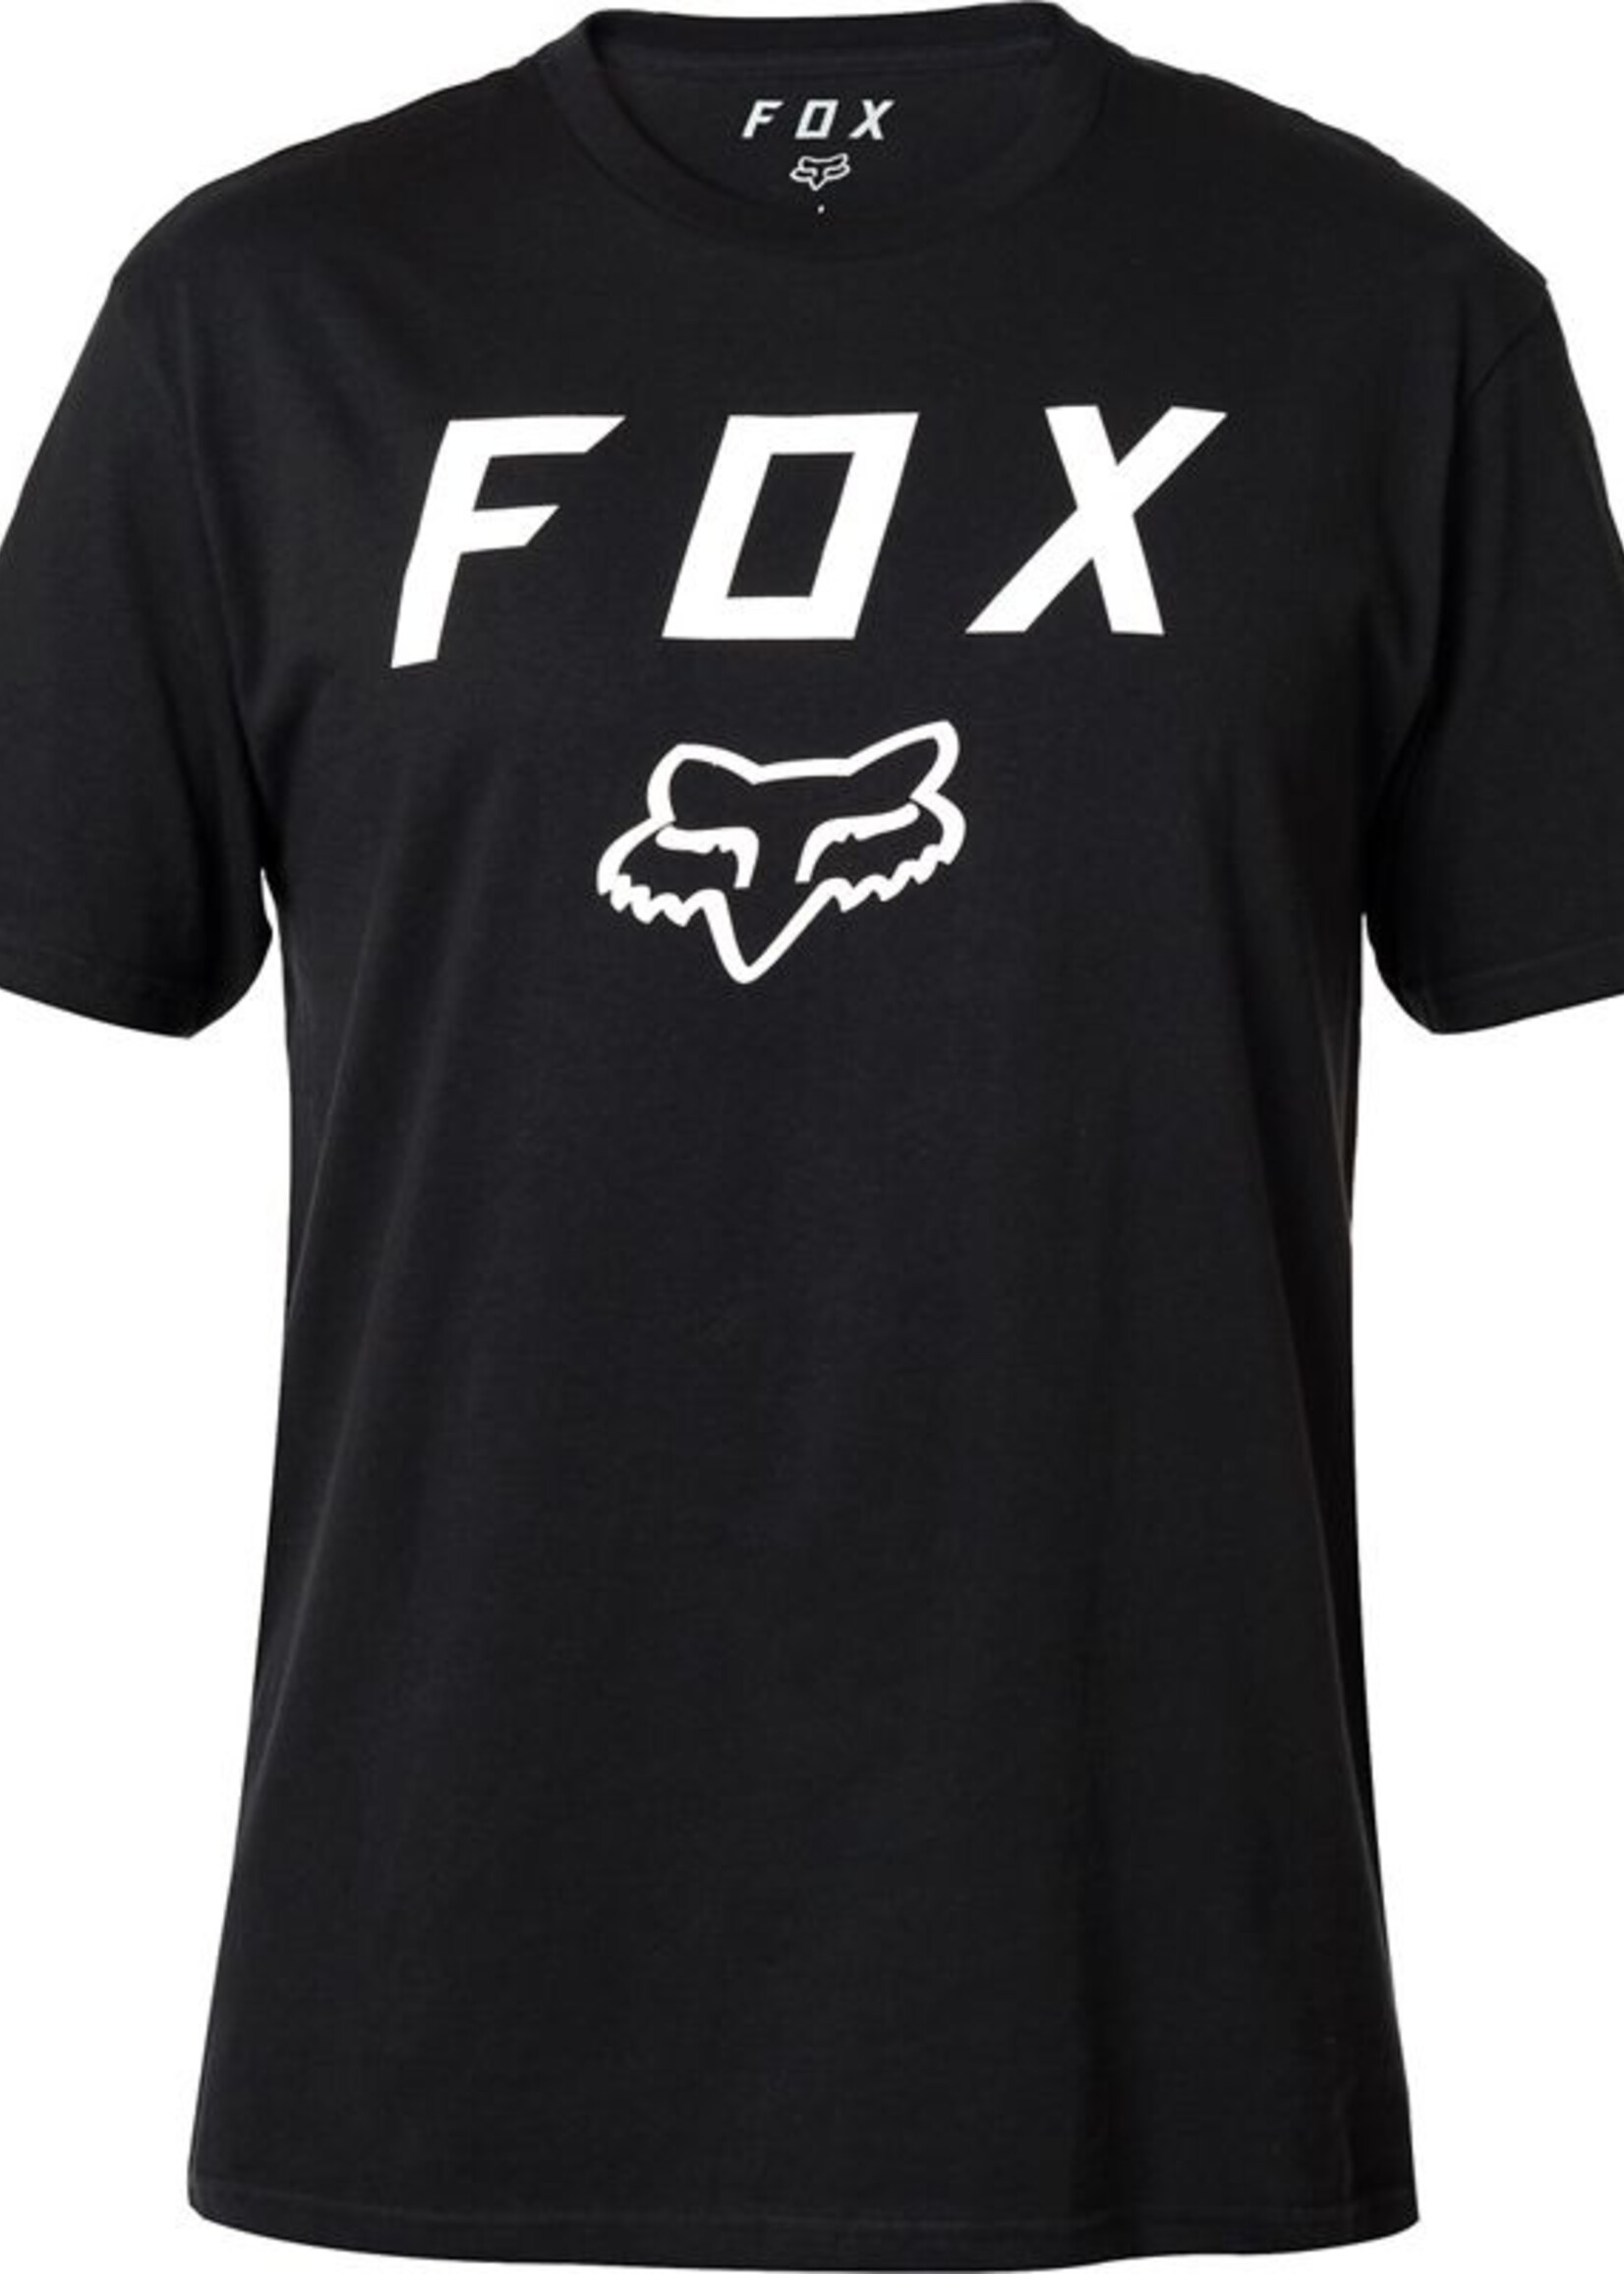 FOX FOX Legacy Moth Short Sleeve Tee